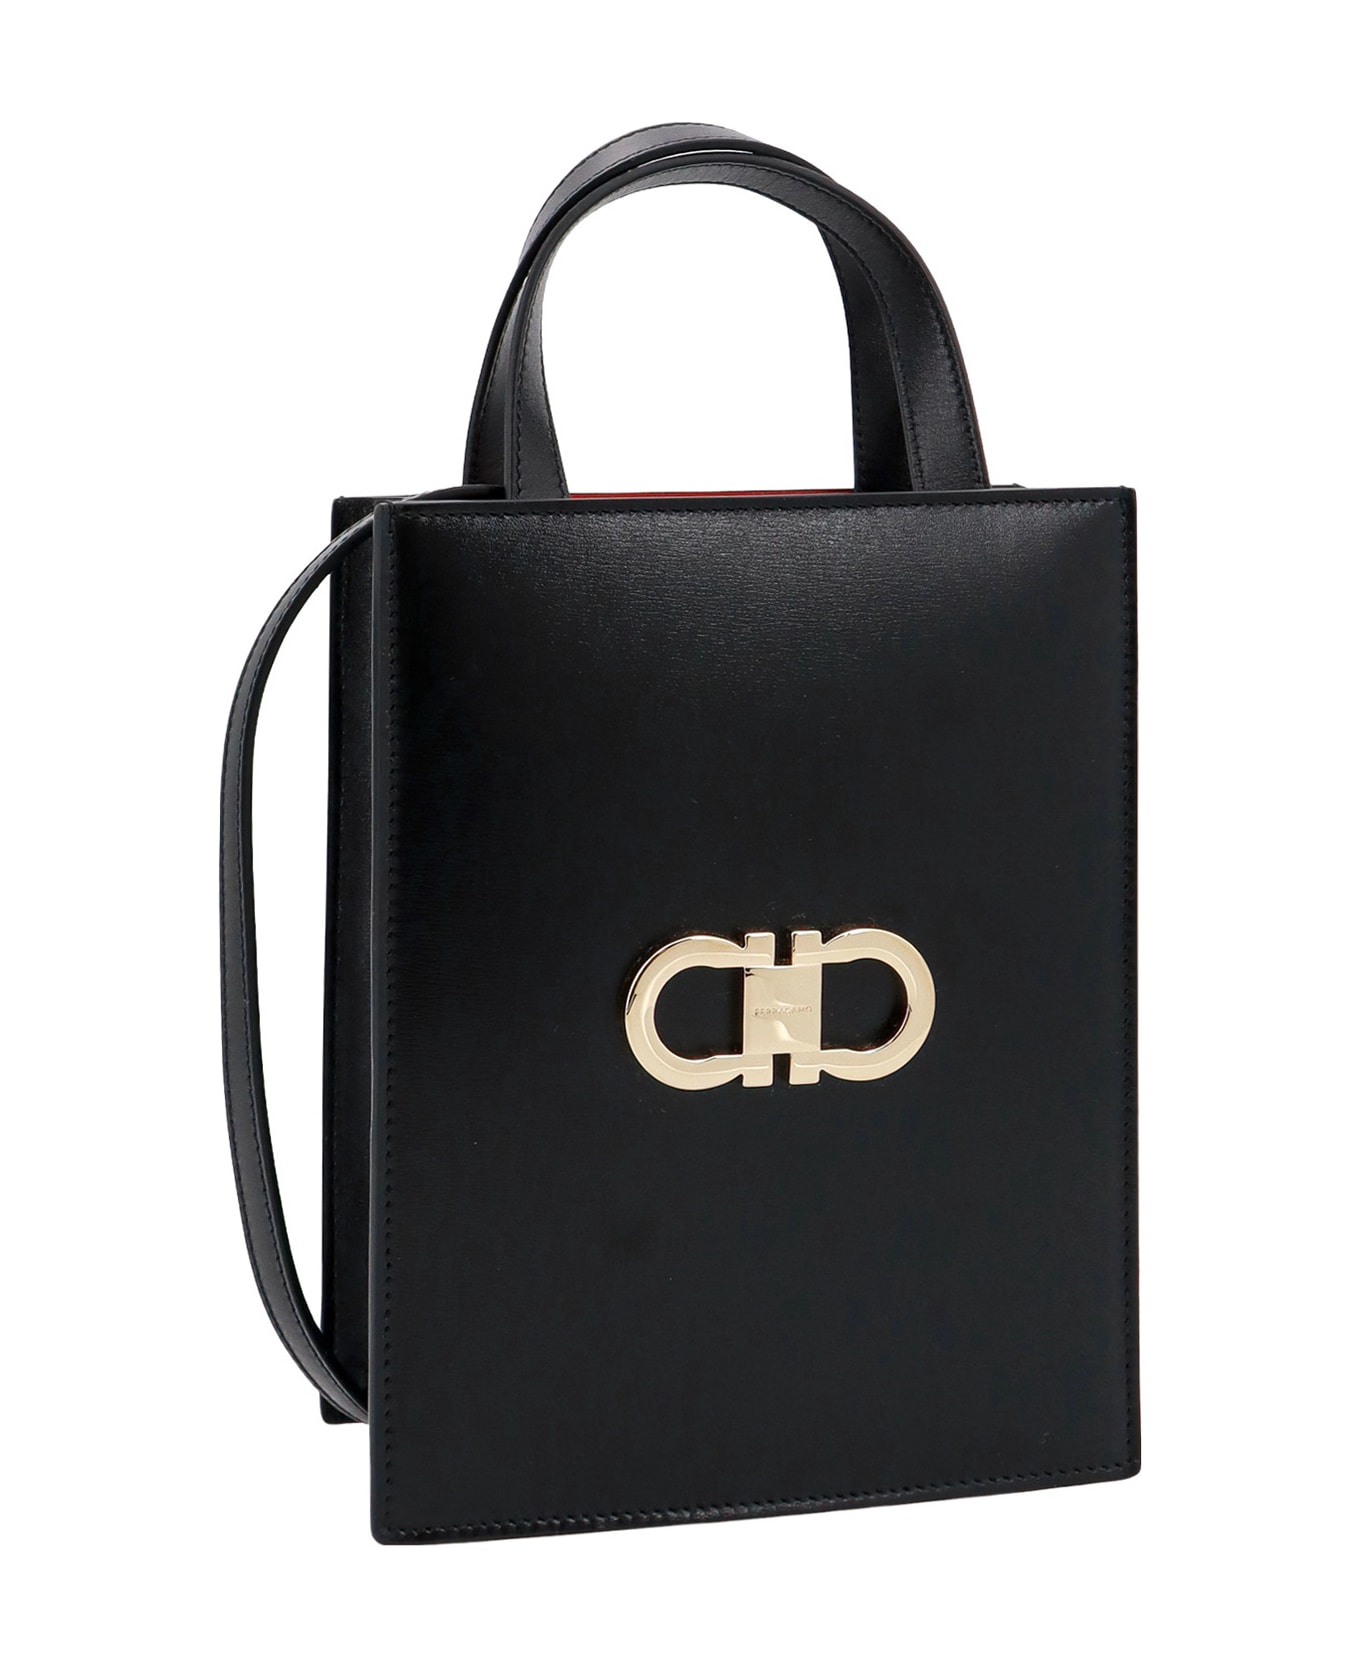 Ferragamo Mini Tote Bag Handbag - Black